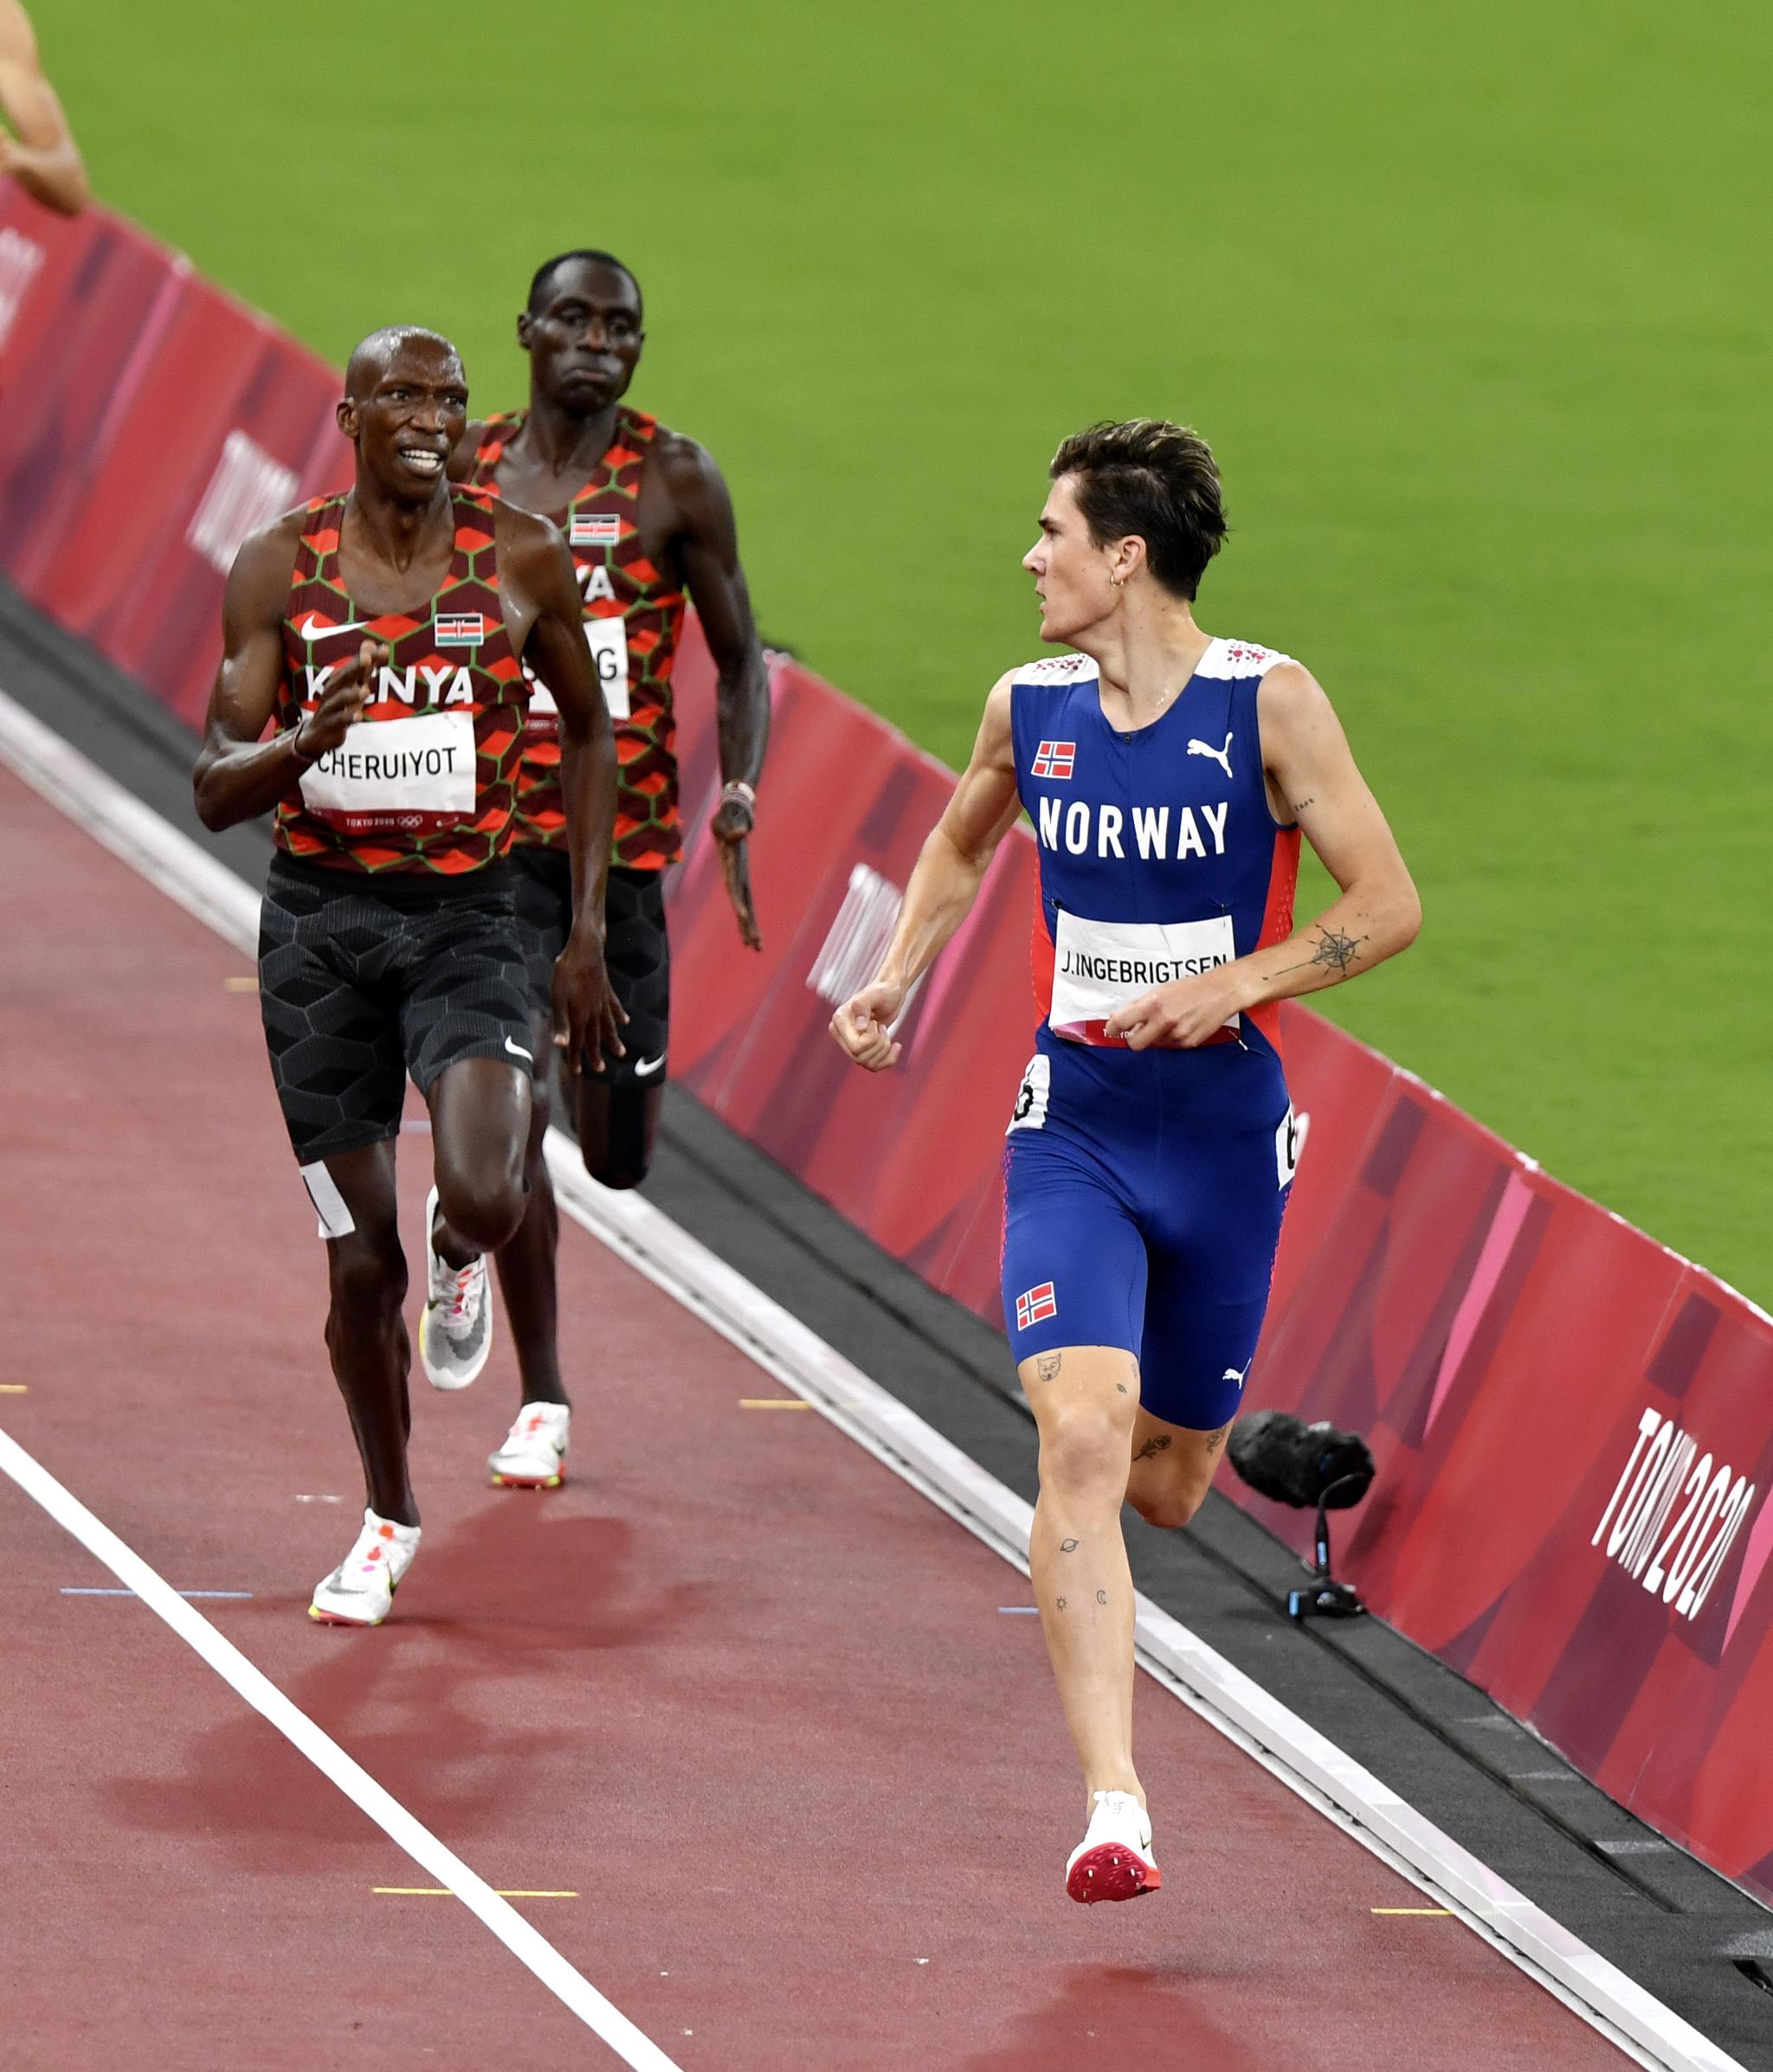 LØP FRA: Slik så det ut da Jakob Ingebrigtsen løp fra Timothy Cheruiyot under OL.